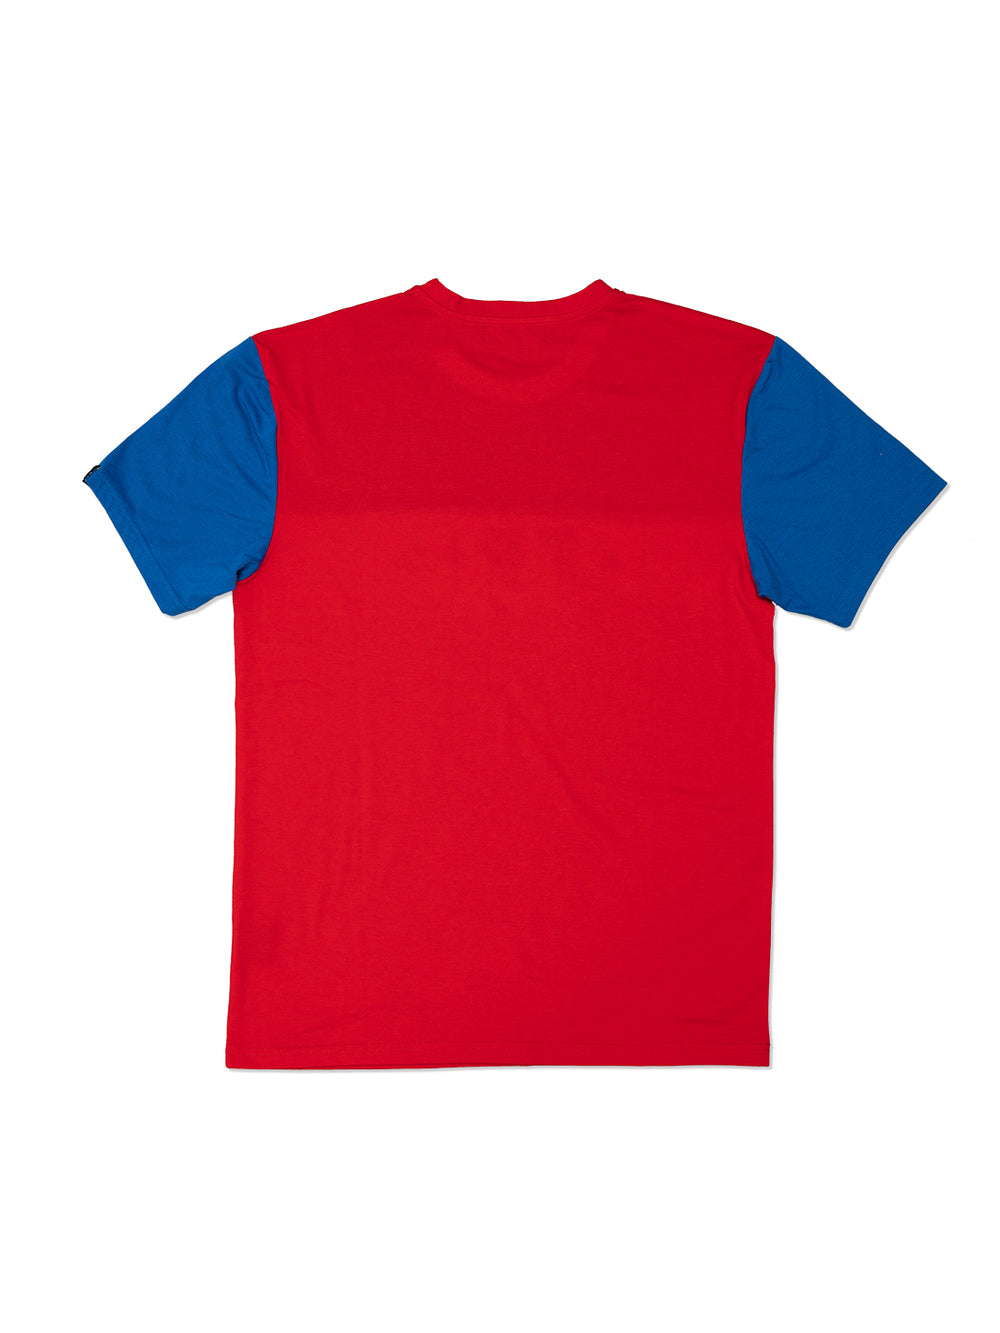 TRI Blue / Red Tshirt - Triangulo Swag